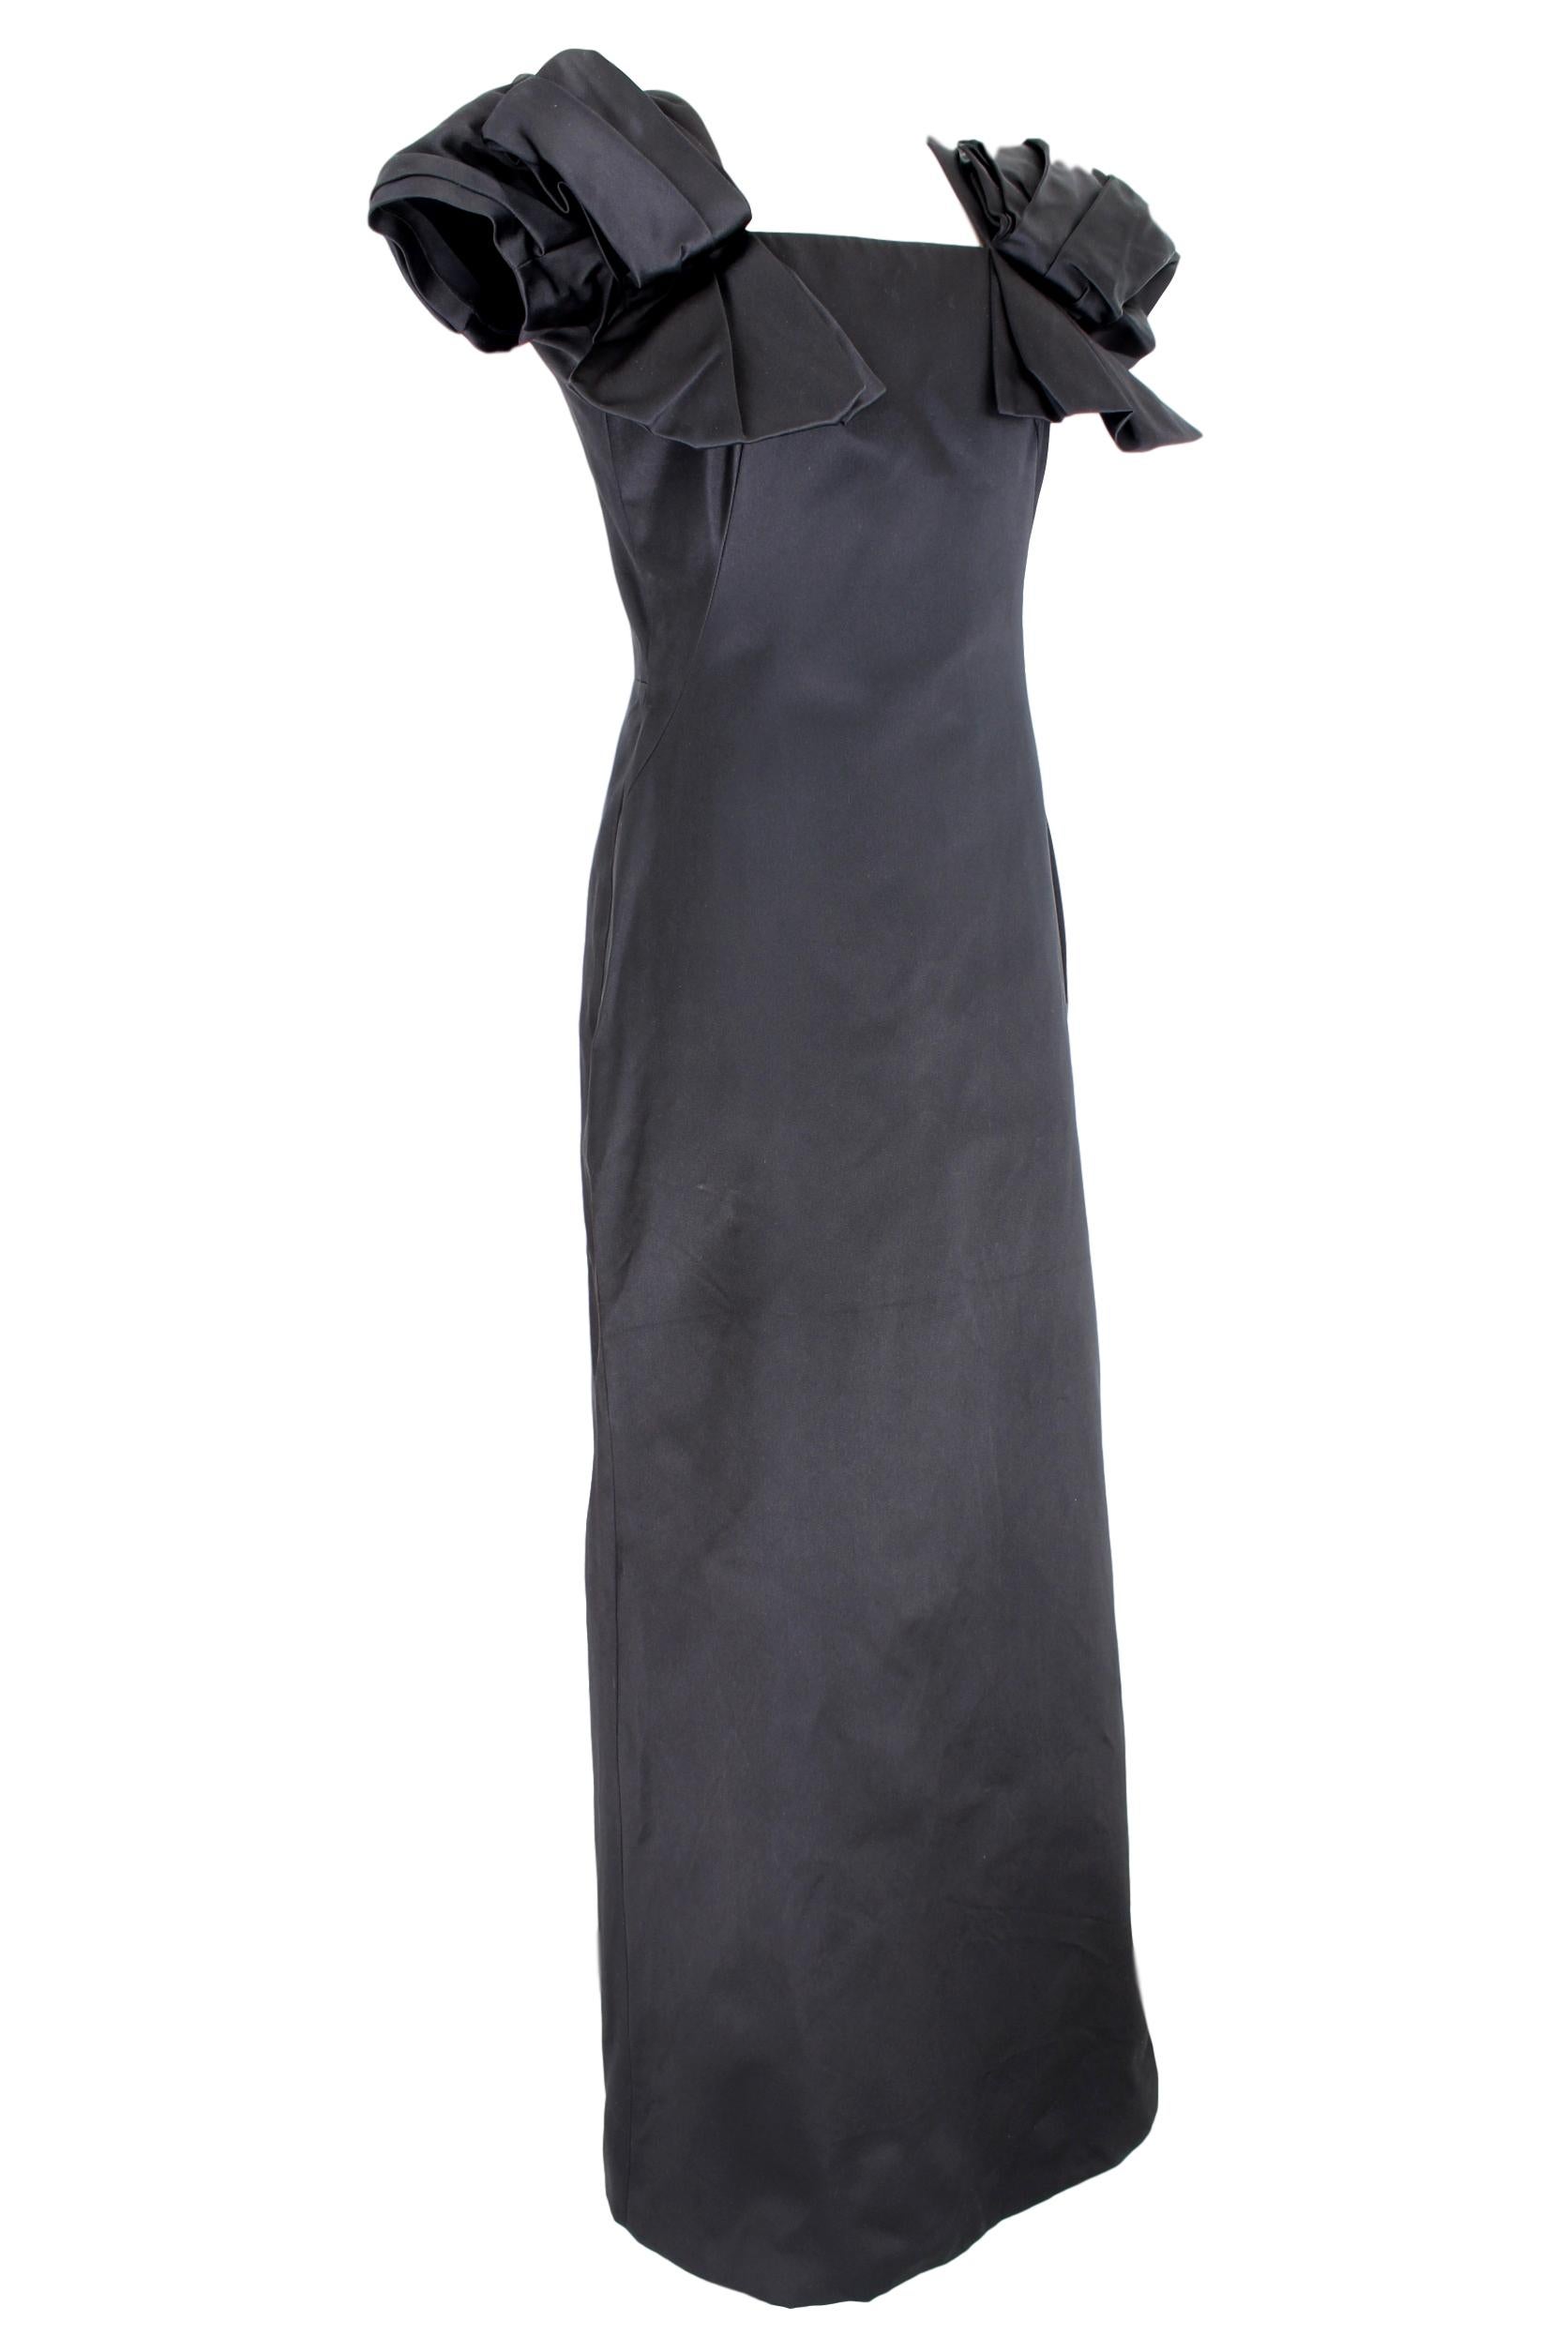 Women's 2000s Alexander Mcqueen Black Silk Evening Grows Dress Bow Sleeves NWT